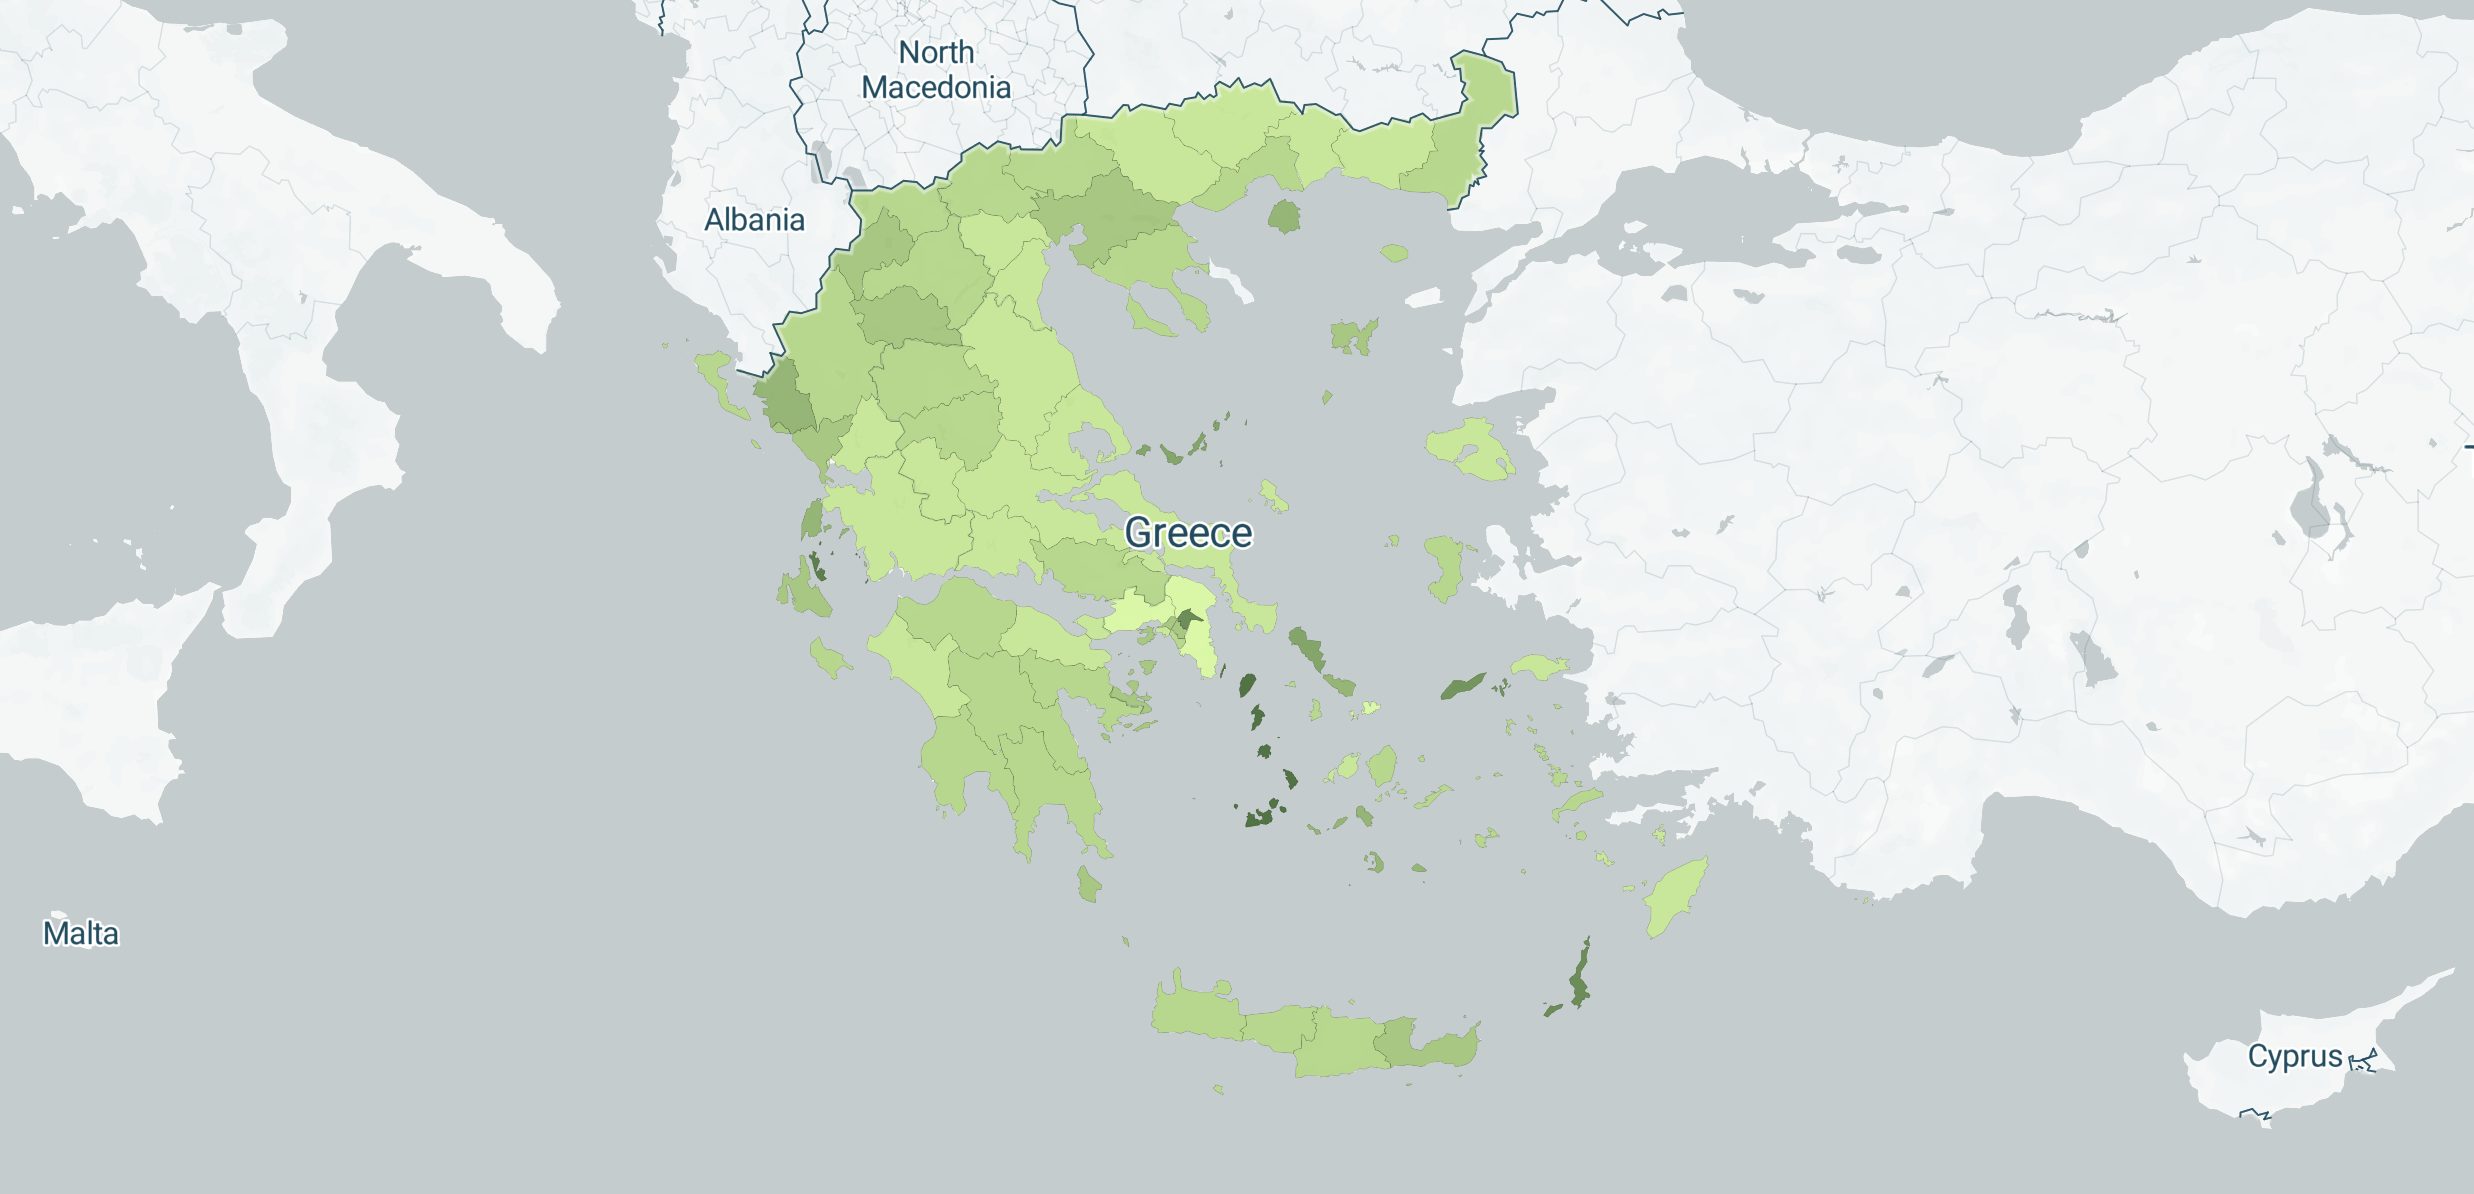 χάρτης με τις περιοχές της Ελλάδας με τους περισσότερους εμβολιασμούς